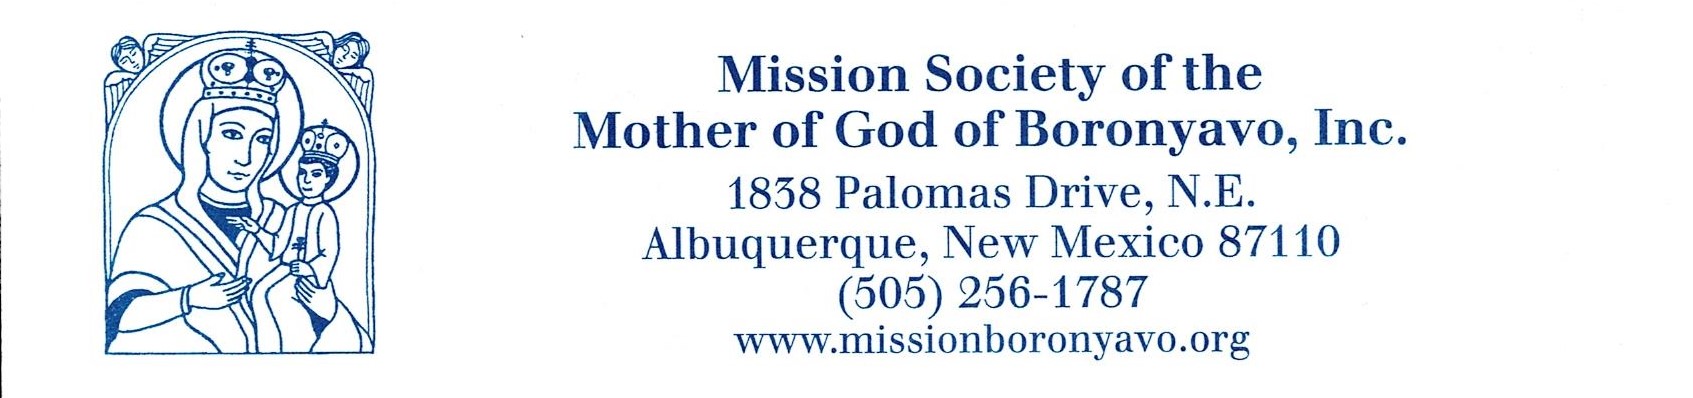 Mission Society of Boronyavo logo